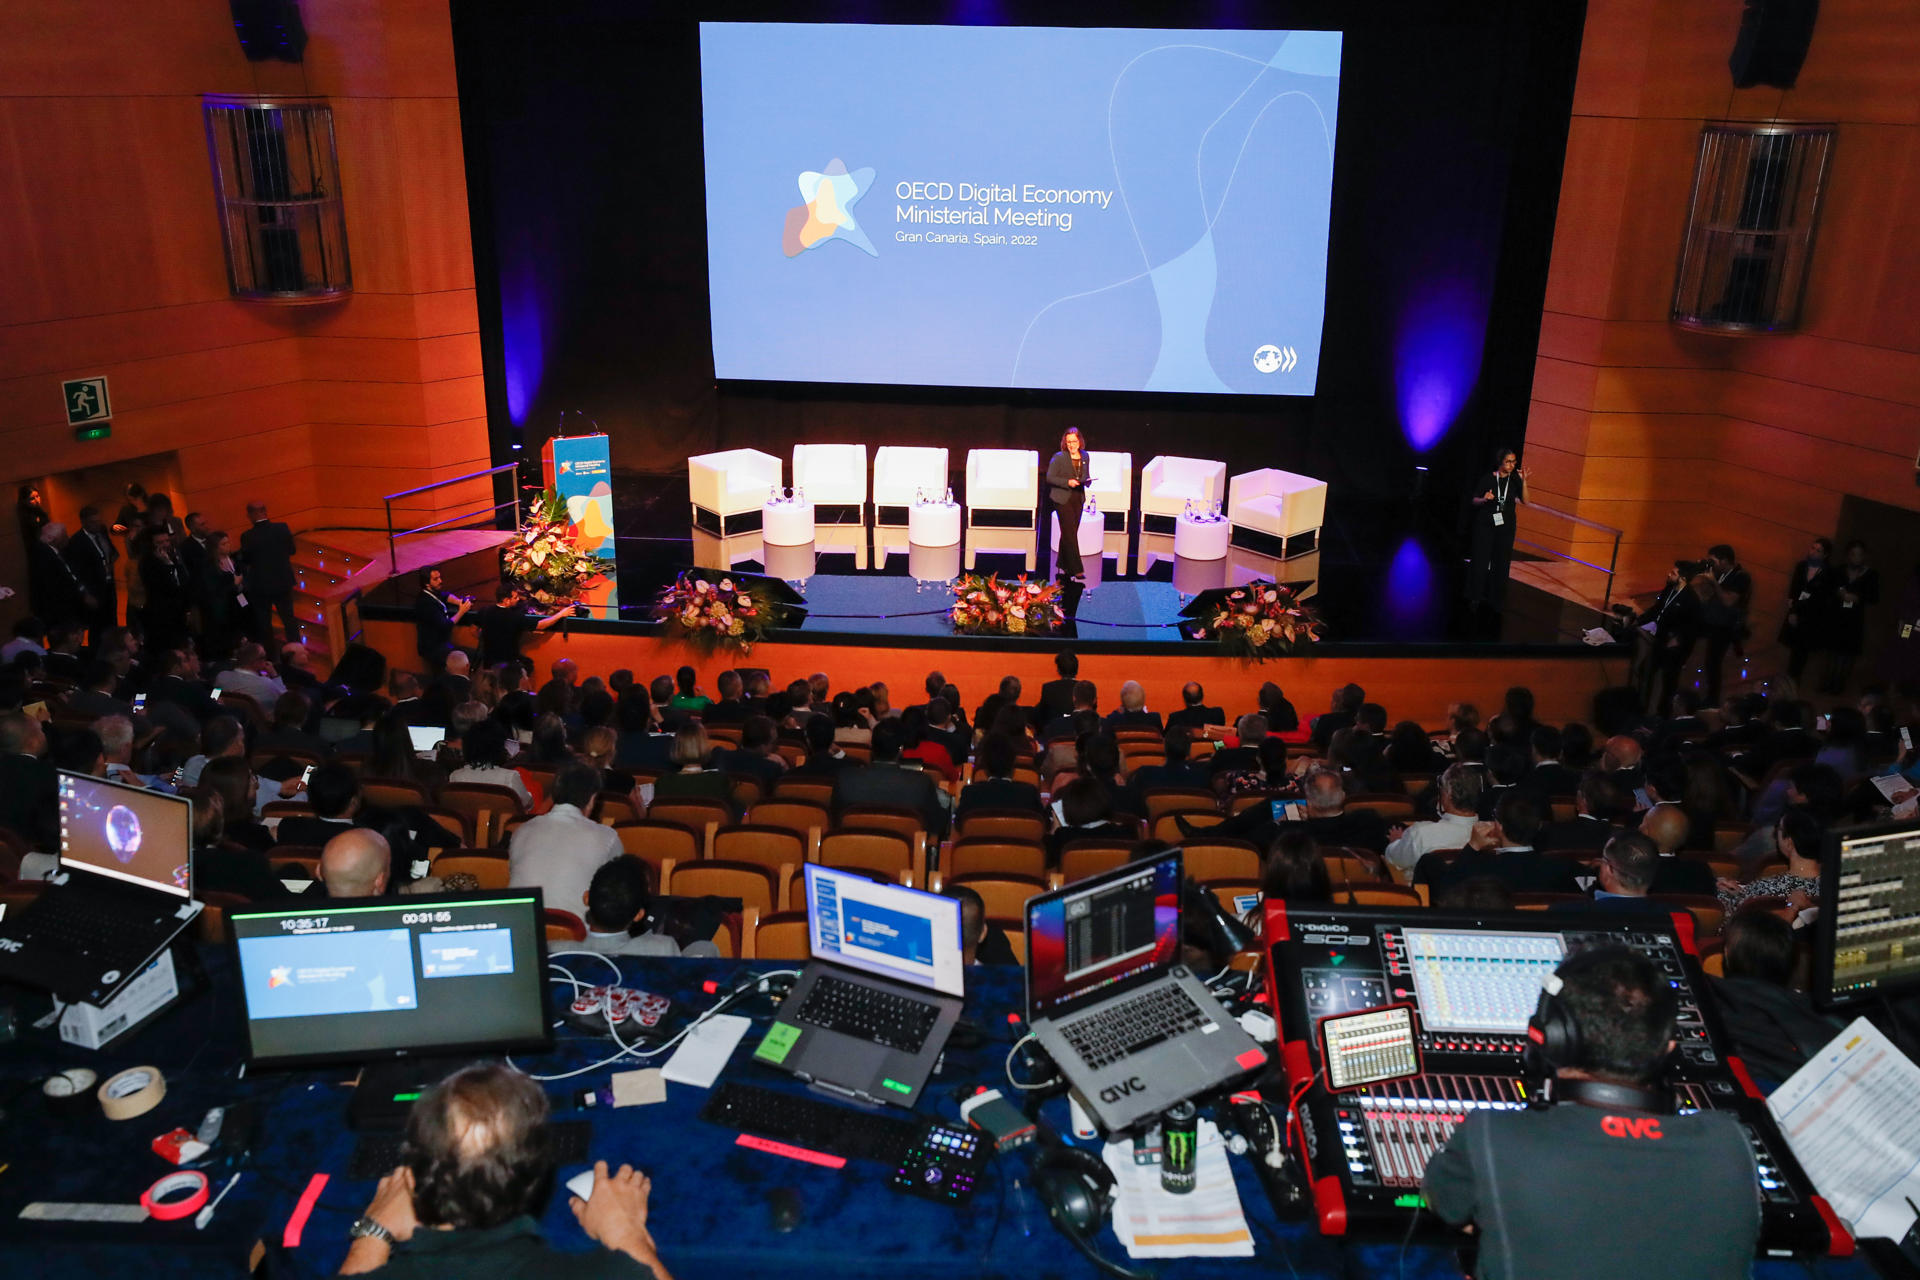 Inauguración este miércoles en Maspalomas (Gran Canaria) de la primera Conferencia Ministerial de Economía Digital de la OCDE que se celebra en Europa, con el propósito de definir estrategias de crecimiento económico mediante una digitalización inclusiva y segura. EFE/ Elvira Urquijo A.